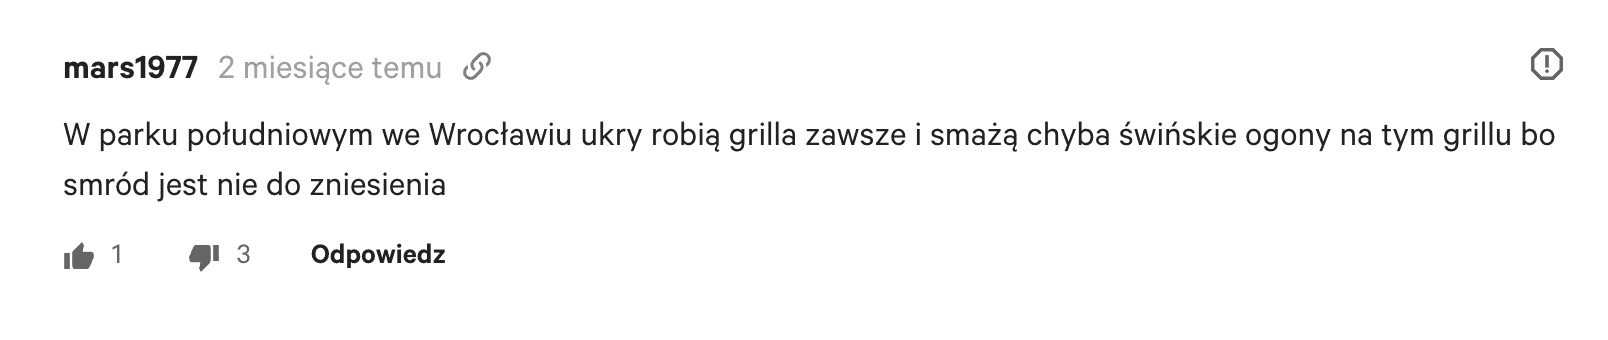 Przykład antyukraińskiego wpisu w komentarzach.